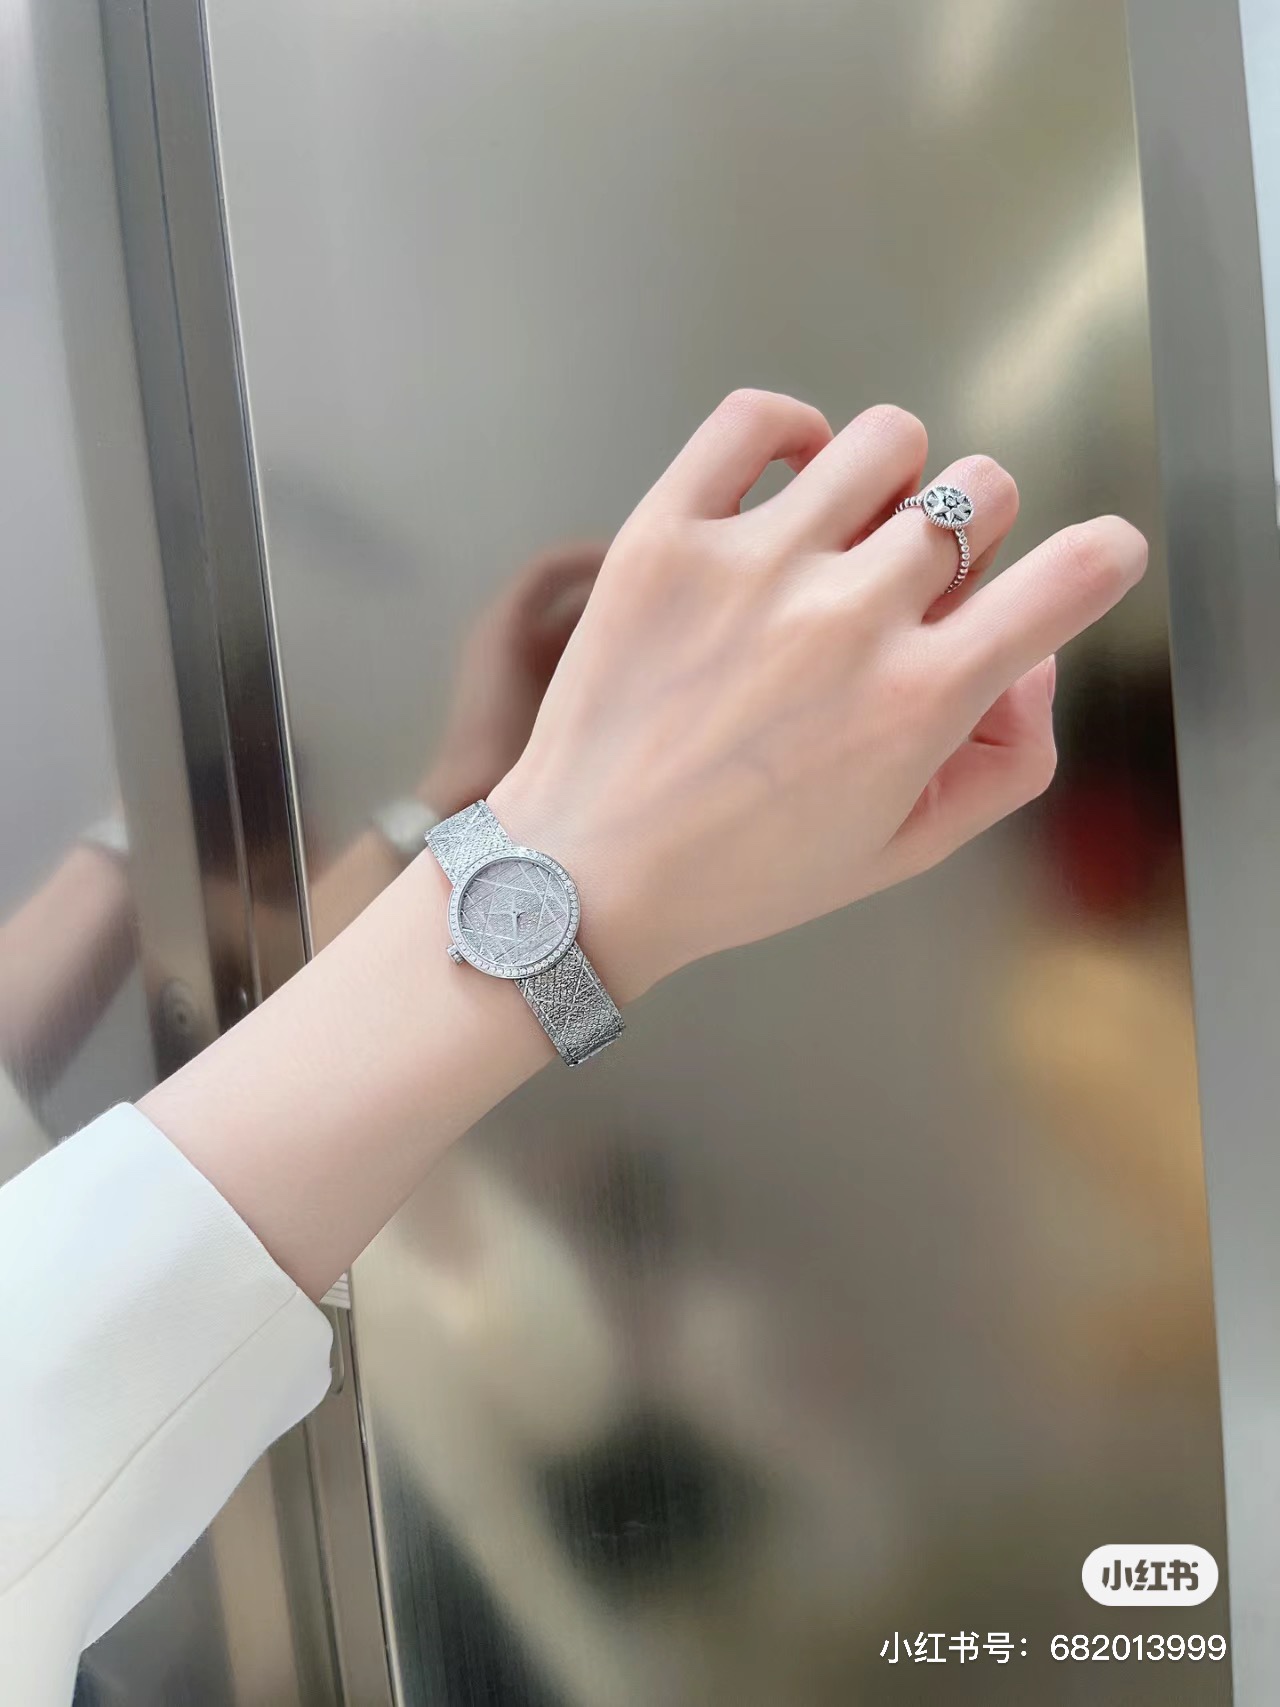 最新作 人気定番 爆買い 腕時計 ディオール偽物 優美な曲線デザイン ダイヤモンド_4